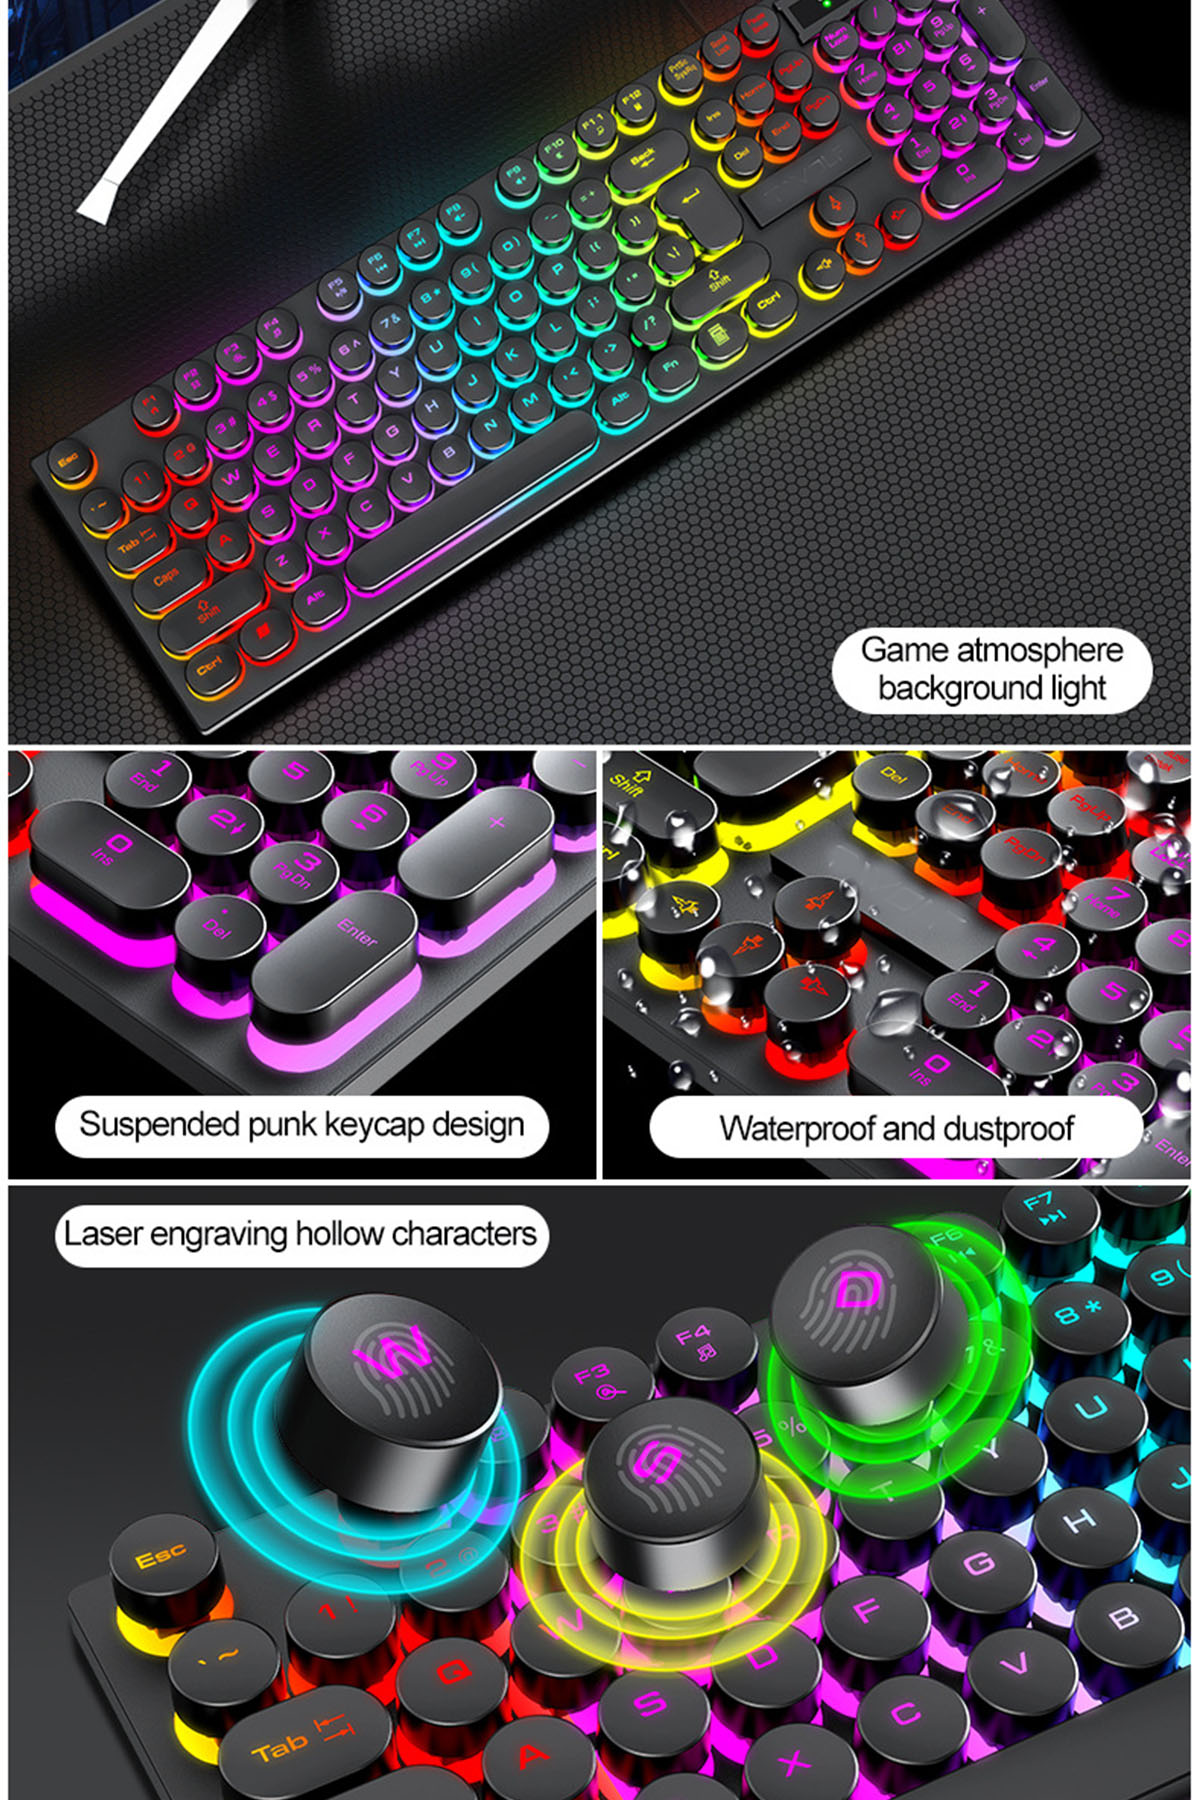 Tastatur Präzision - Retro Punk BRIGHTAKE Gaming Stil Tastatur und Einem, in